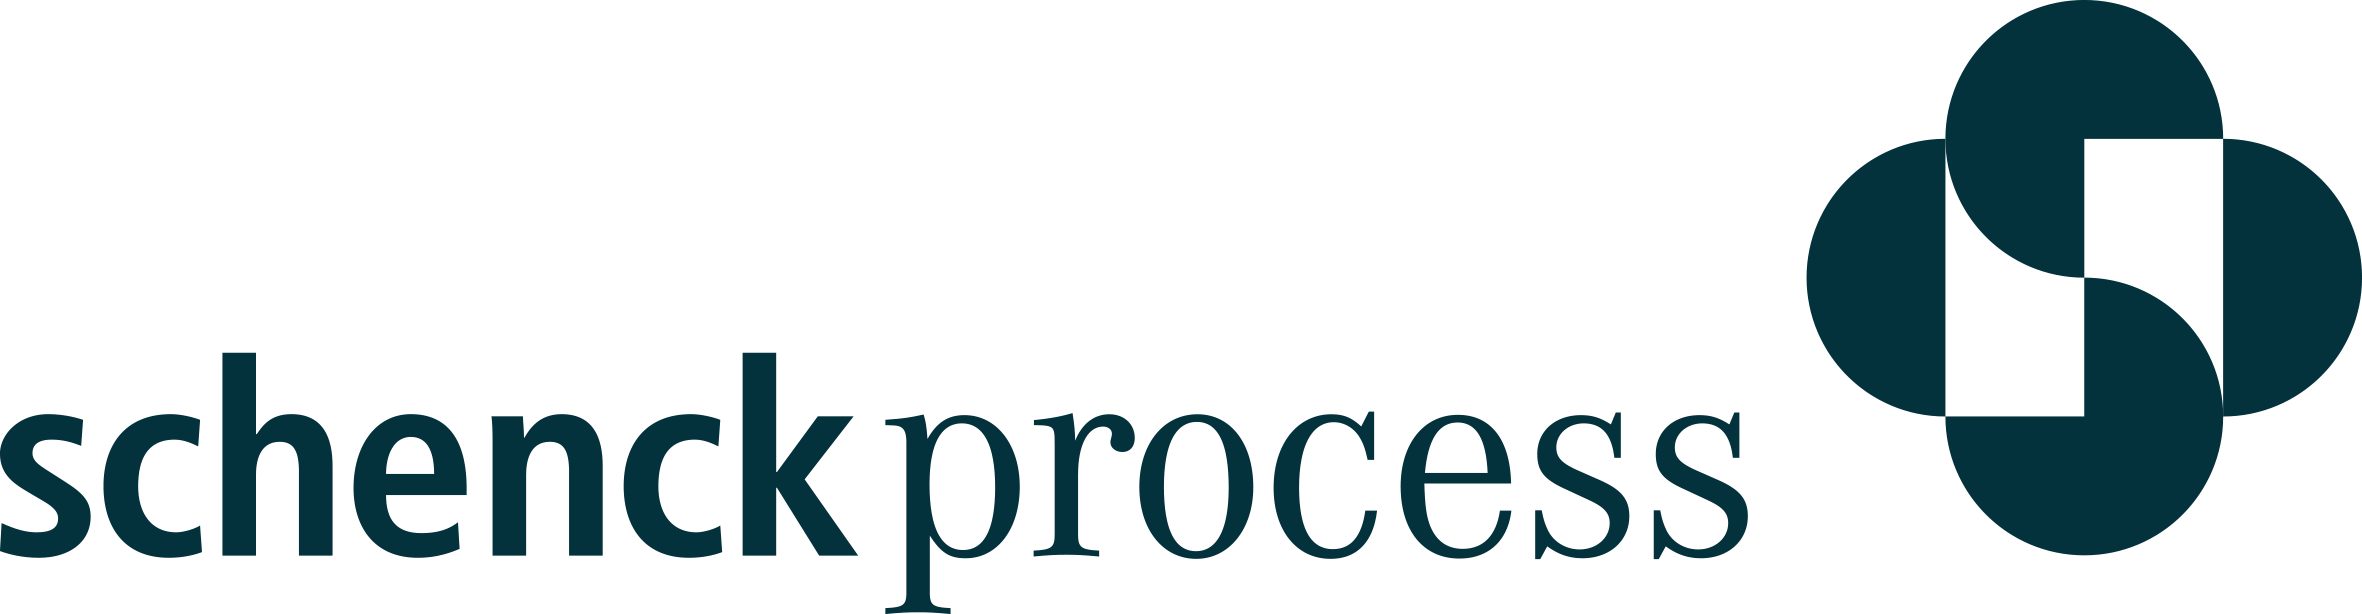 Schenck Process Europe GmbH logo